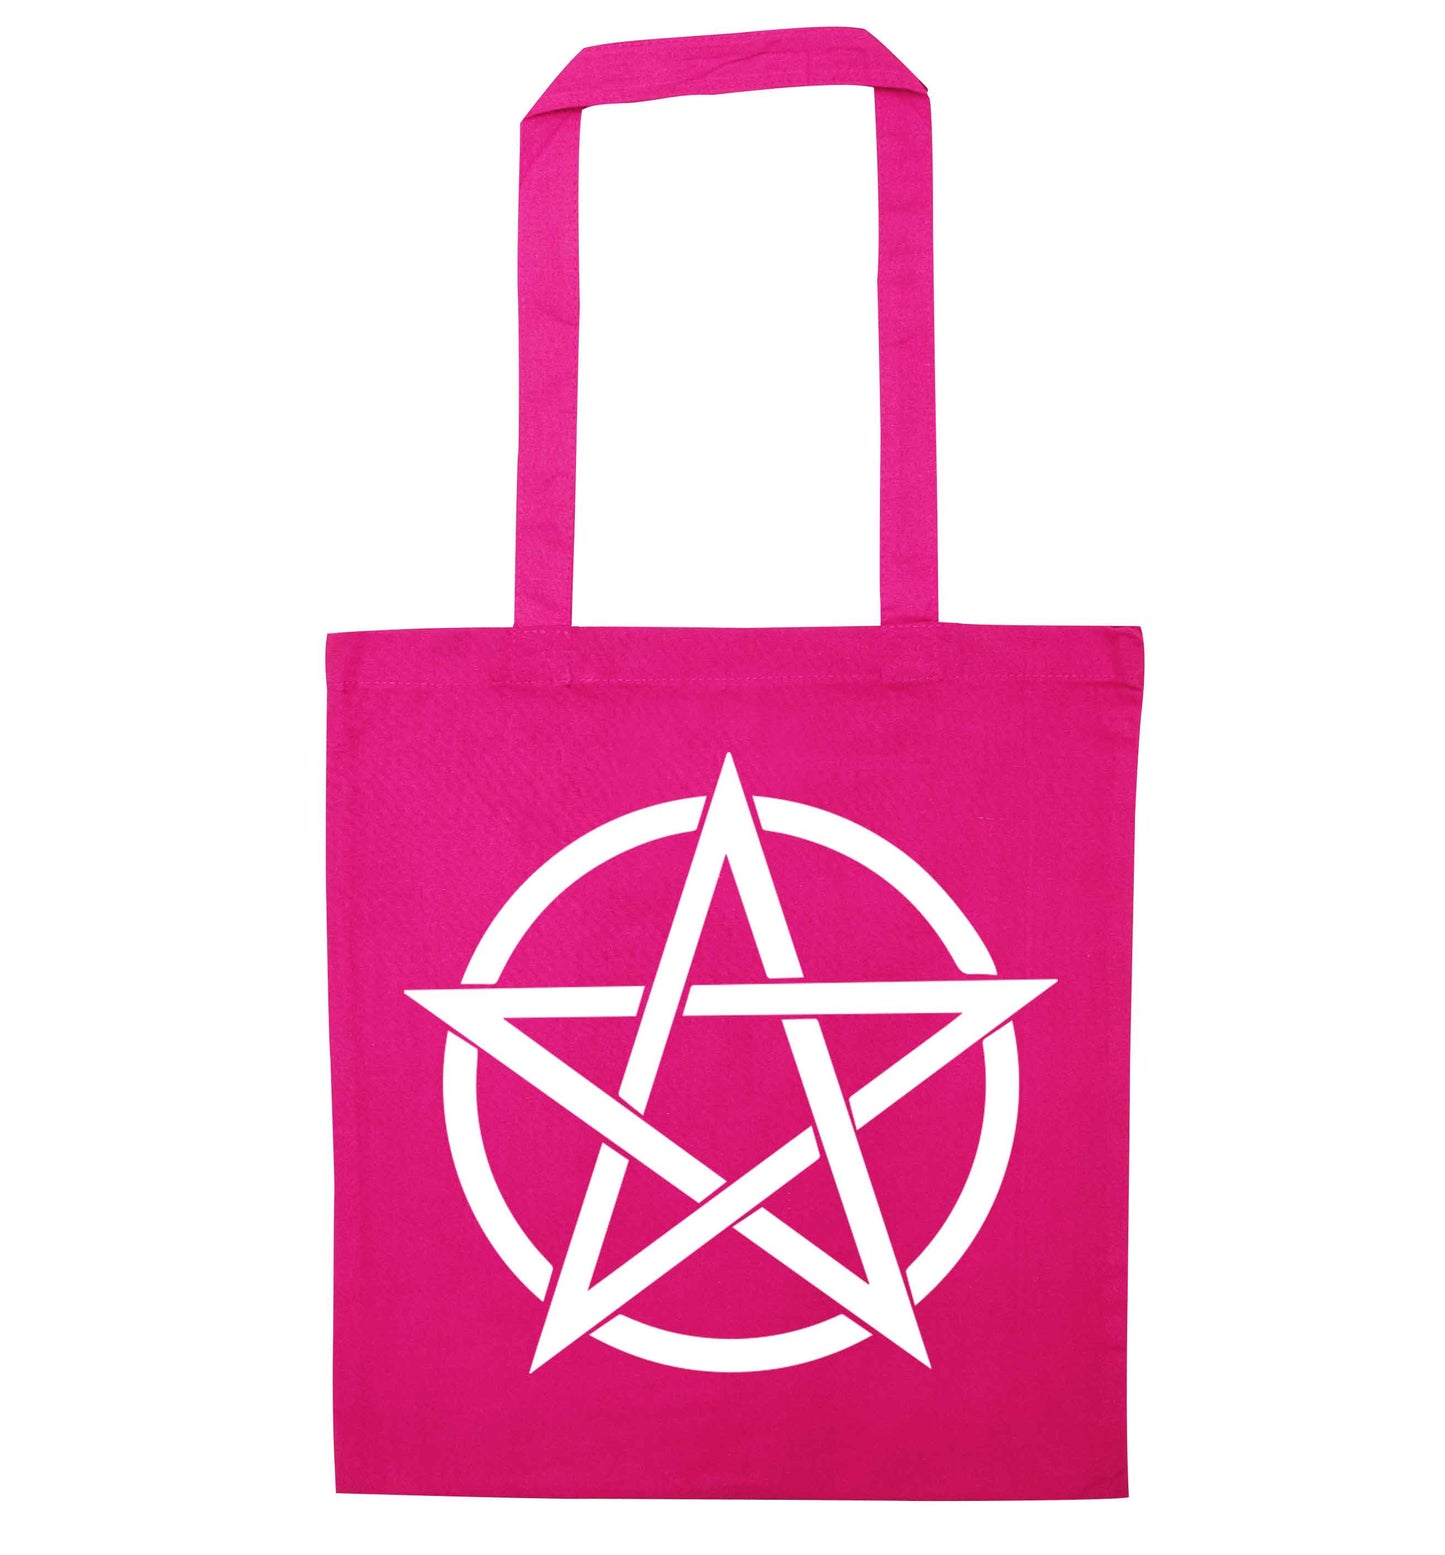 Pentagram symbol pink tote bag